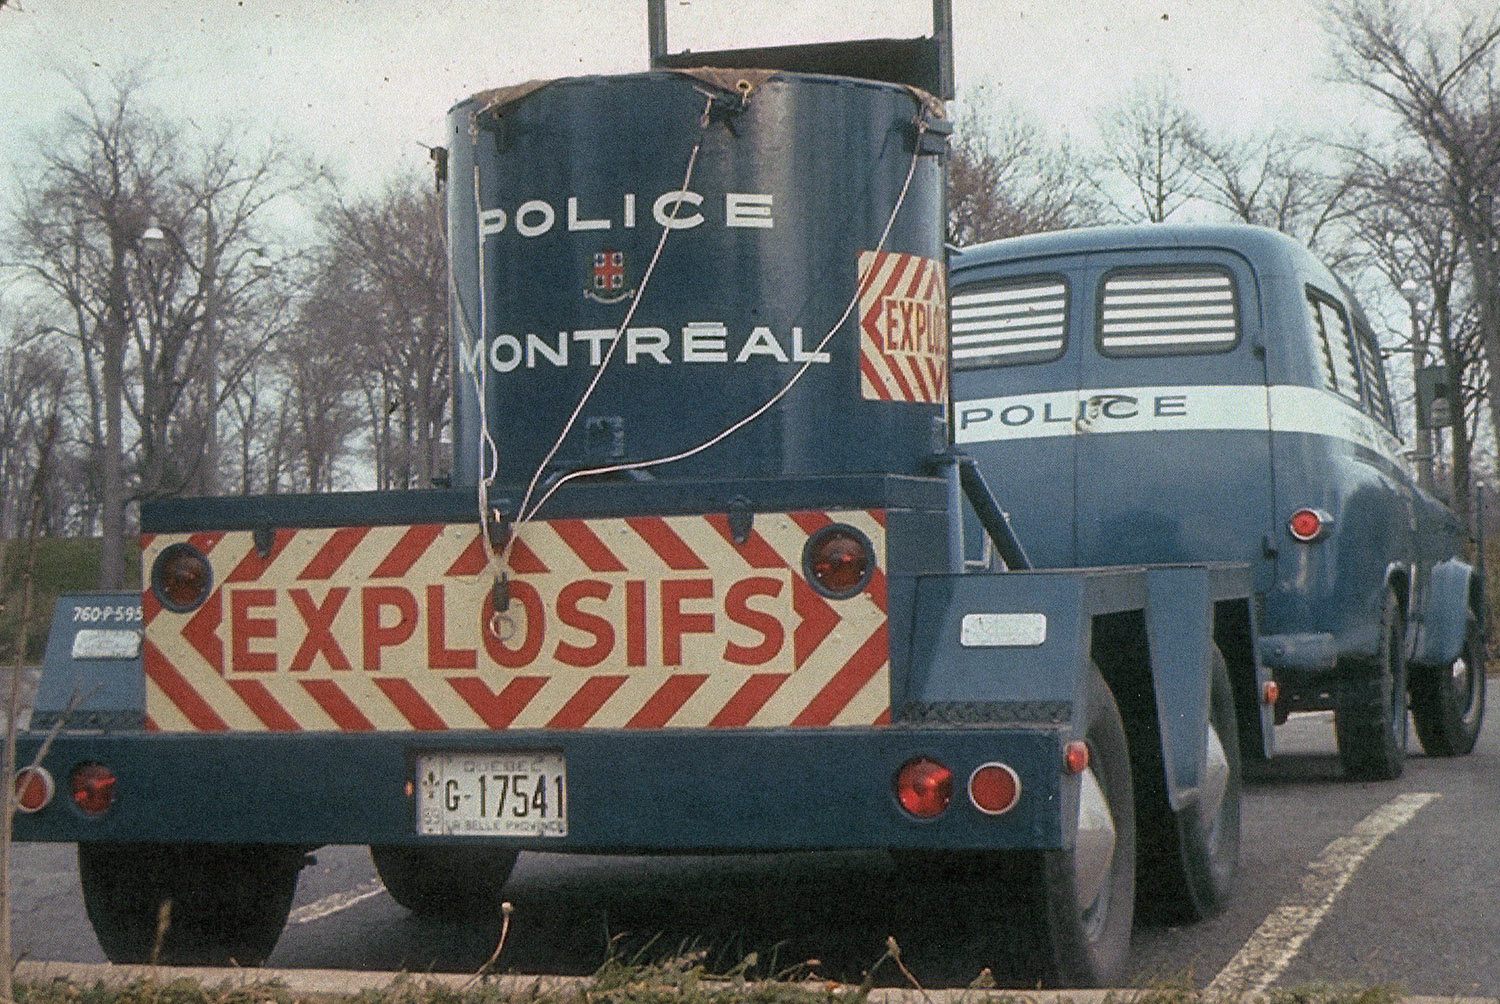 Photographie couleur montrant la partie arrière d’un camion bleu auquel est attachée une remorque sur laquelle il y a un grand contenant de métal cylindrique. Sur la porte de la remorque, il est écrit « explosifs » en lettres majuscules.